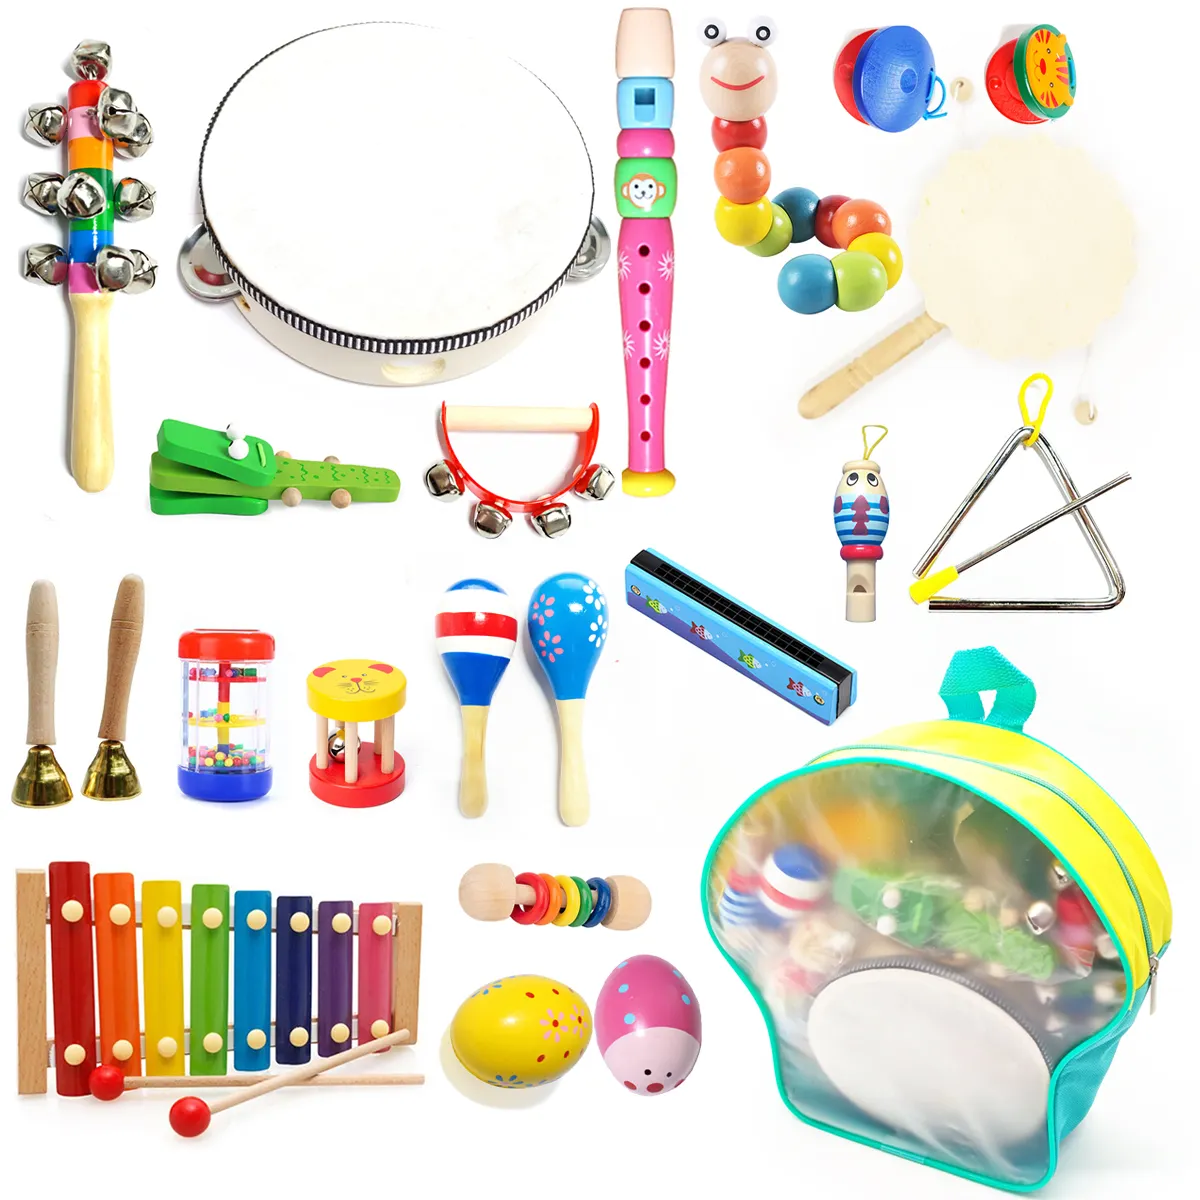 Nuevo instrumento de percusión para bebés, juego de juguetes educativos, desarrollo creativo, mano de música de madera, juguetes Montessori de aprendizaje para niños, regalo nuevo